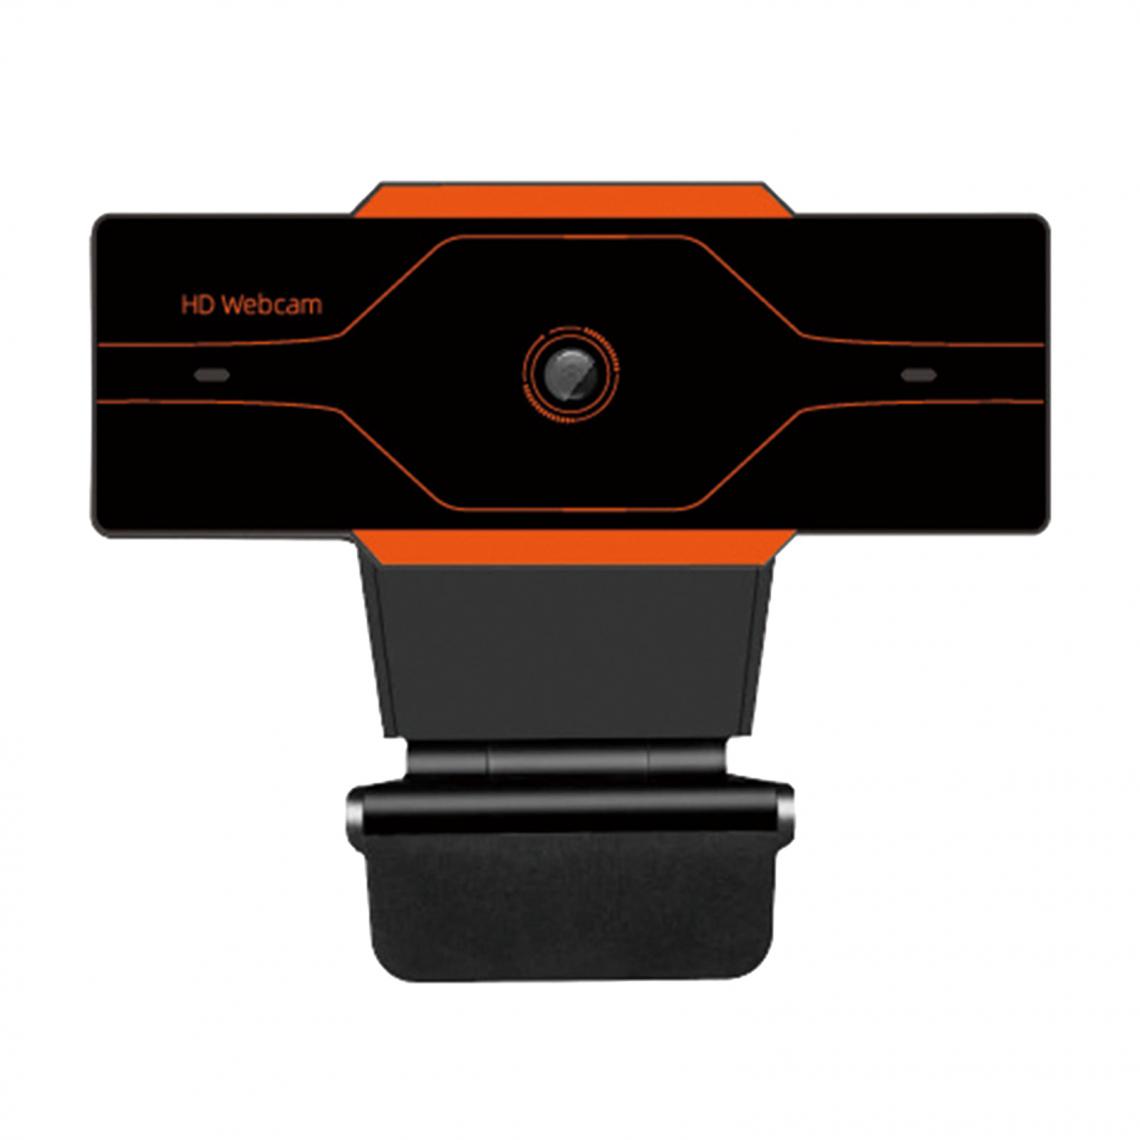 marque generique - Webcam HD Caméra Web Cam Microphone Pour Ordinateur Portable PC 1080P Orange - Webcam